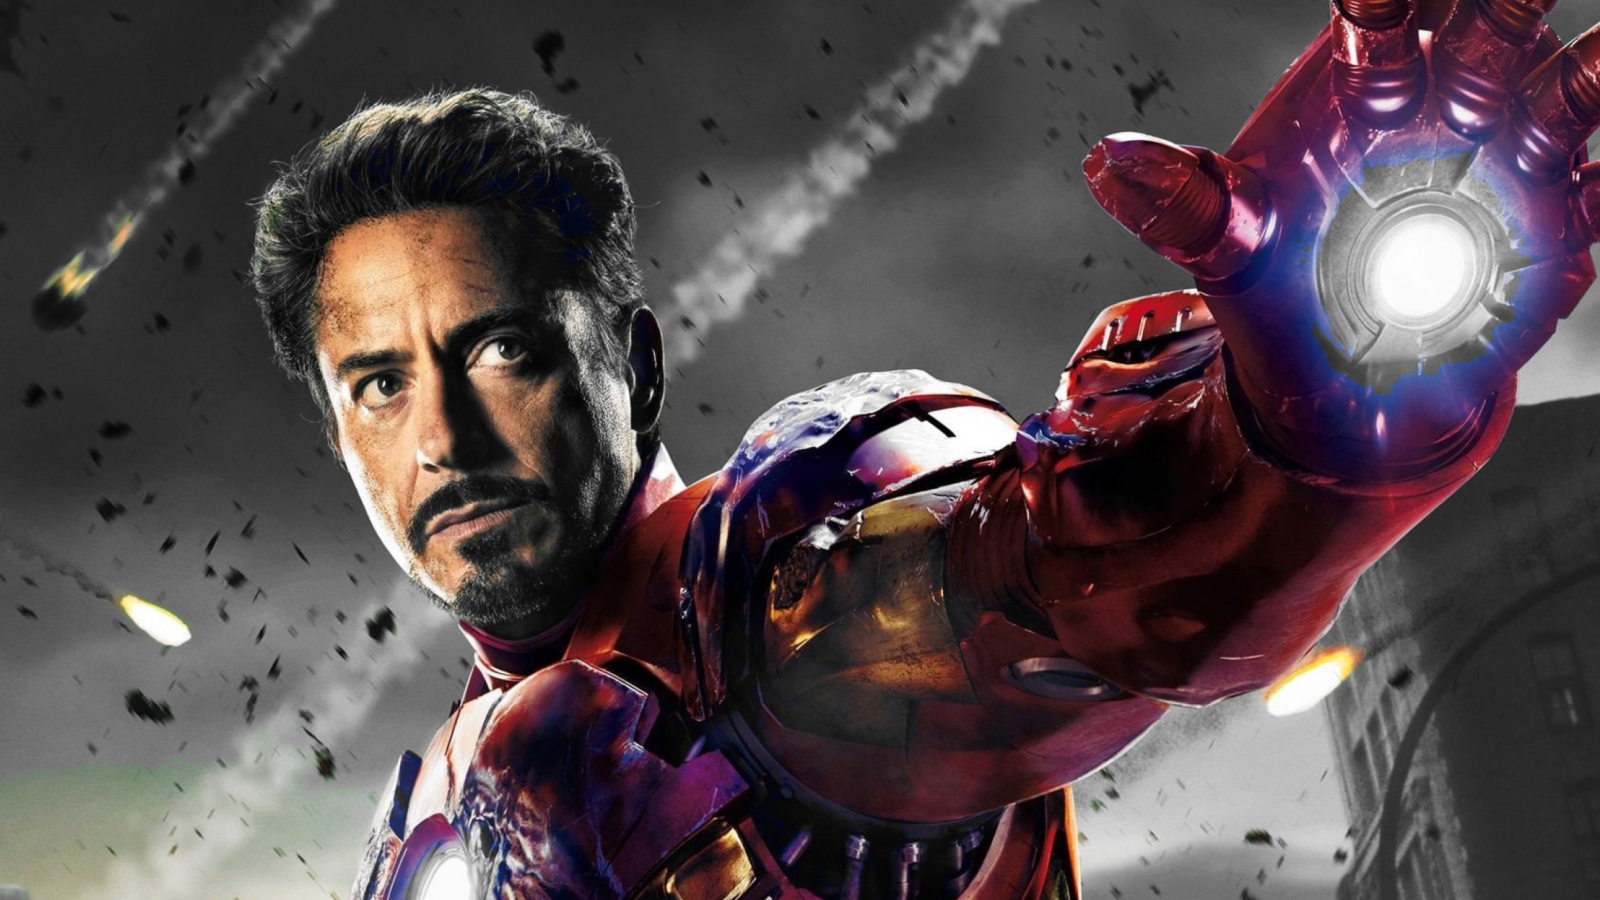 Das Iron Man - The Avengers 2012 Wallpaper 1600x900